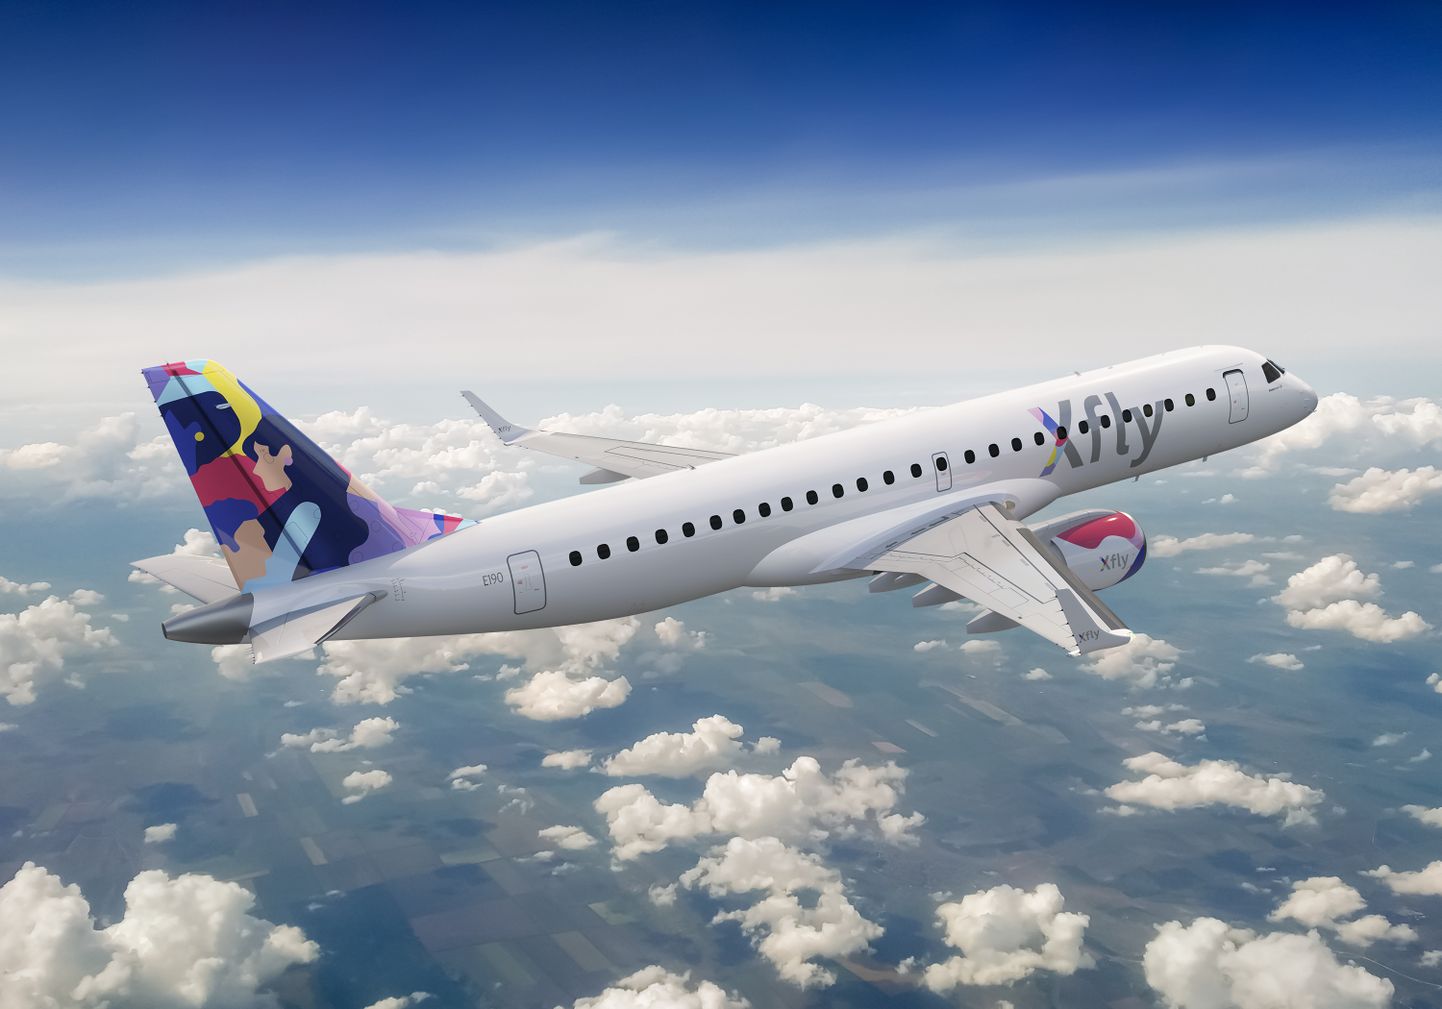 Regional Jet võttis kasutusele brändinime Xfly